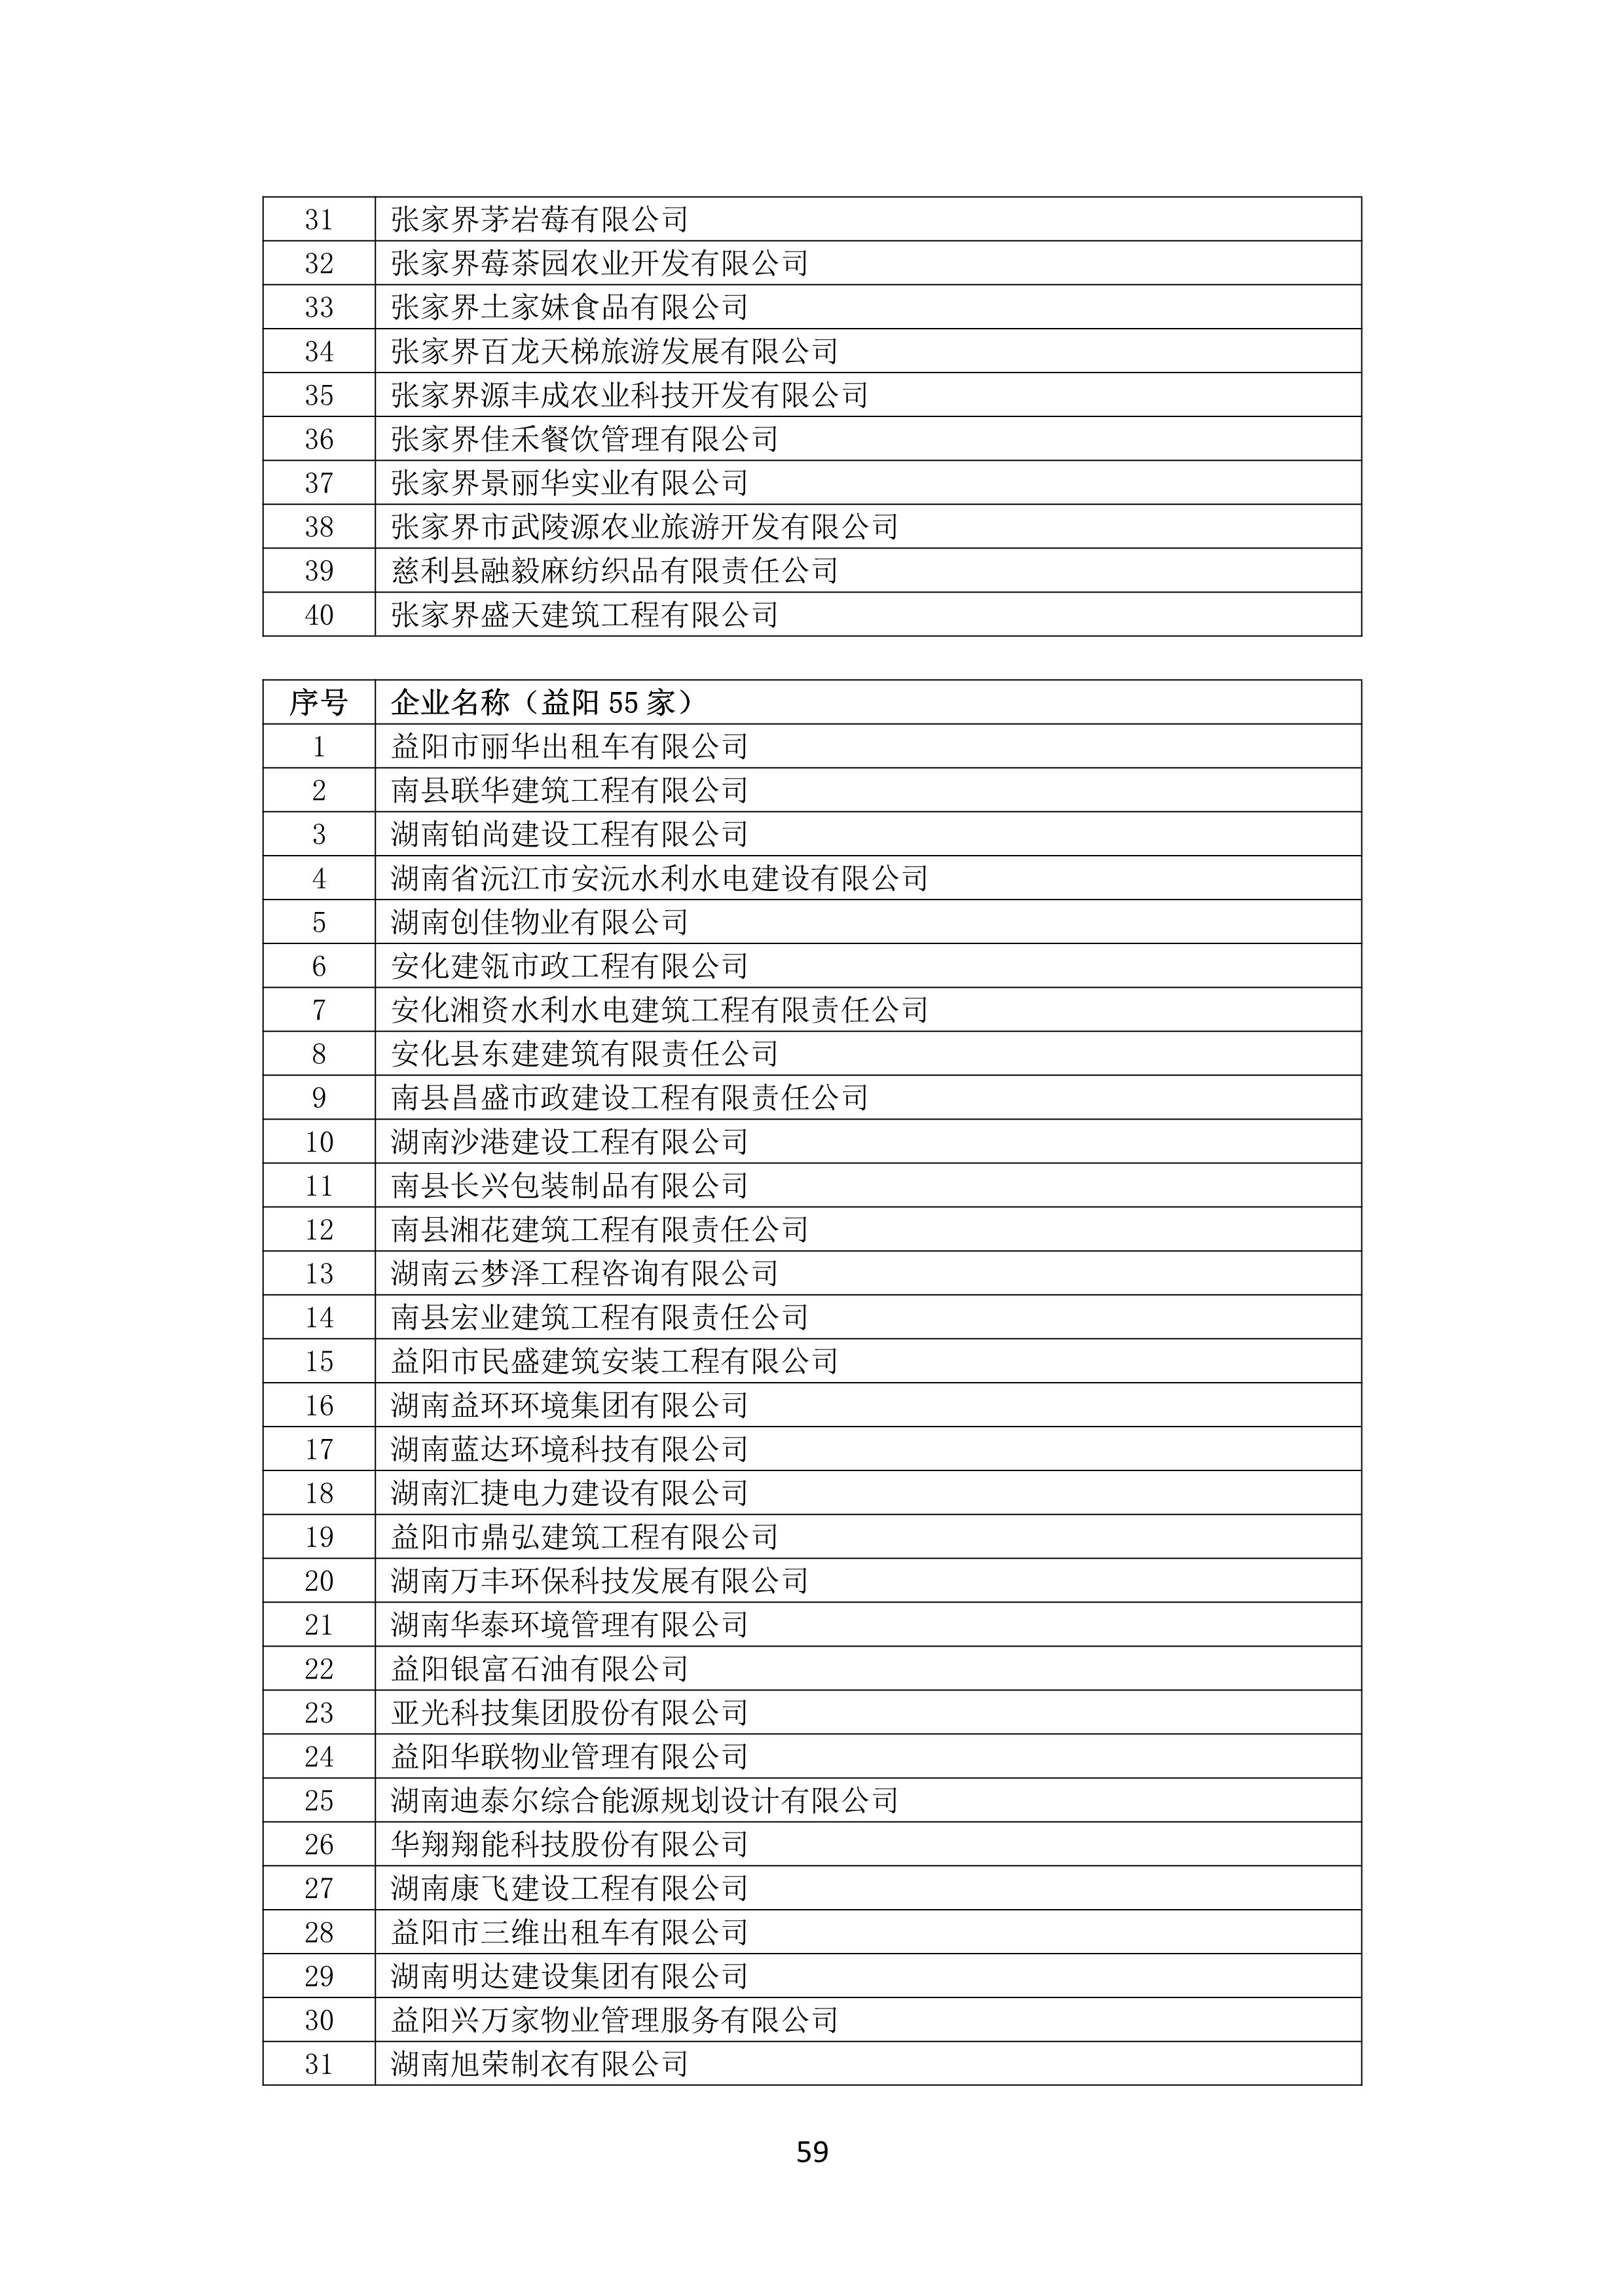 2021 年(nián)度湖南省守合同重信用企業名單_60.png